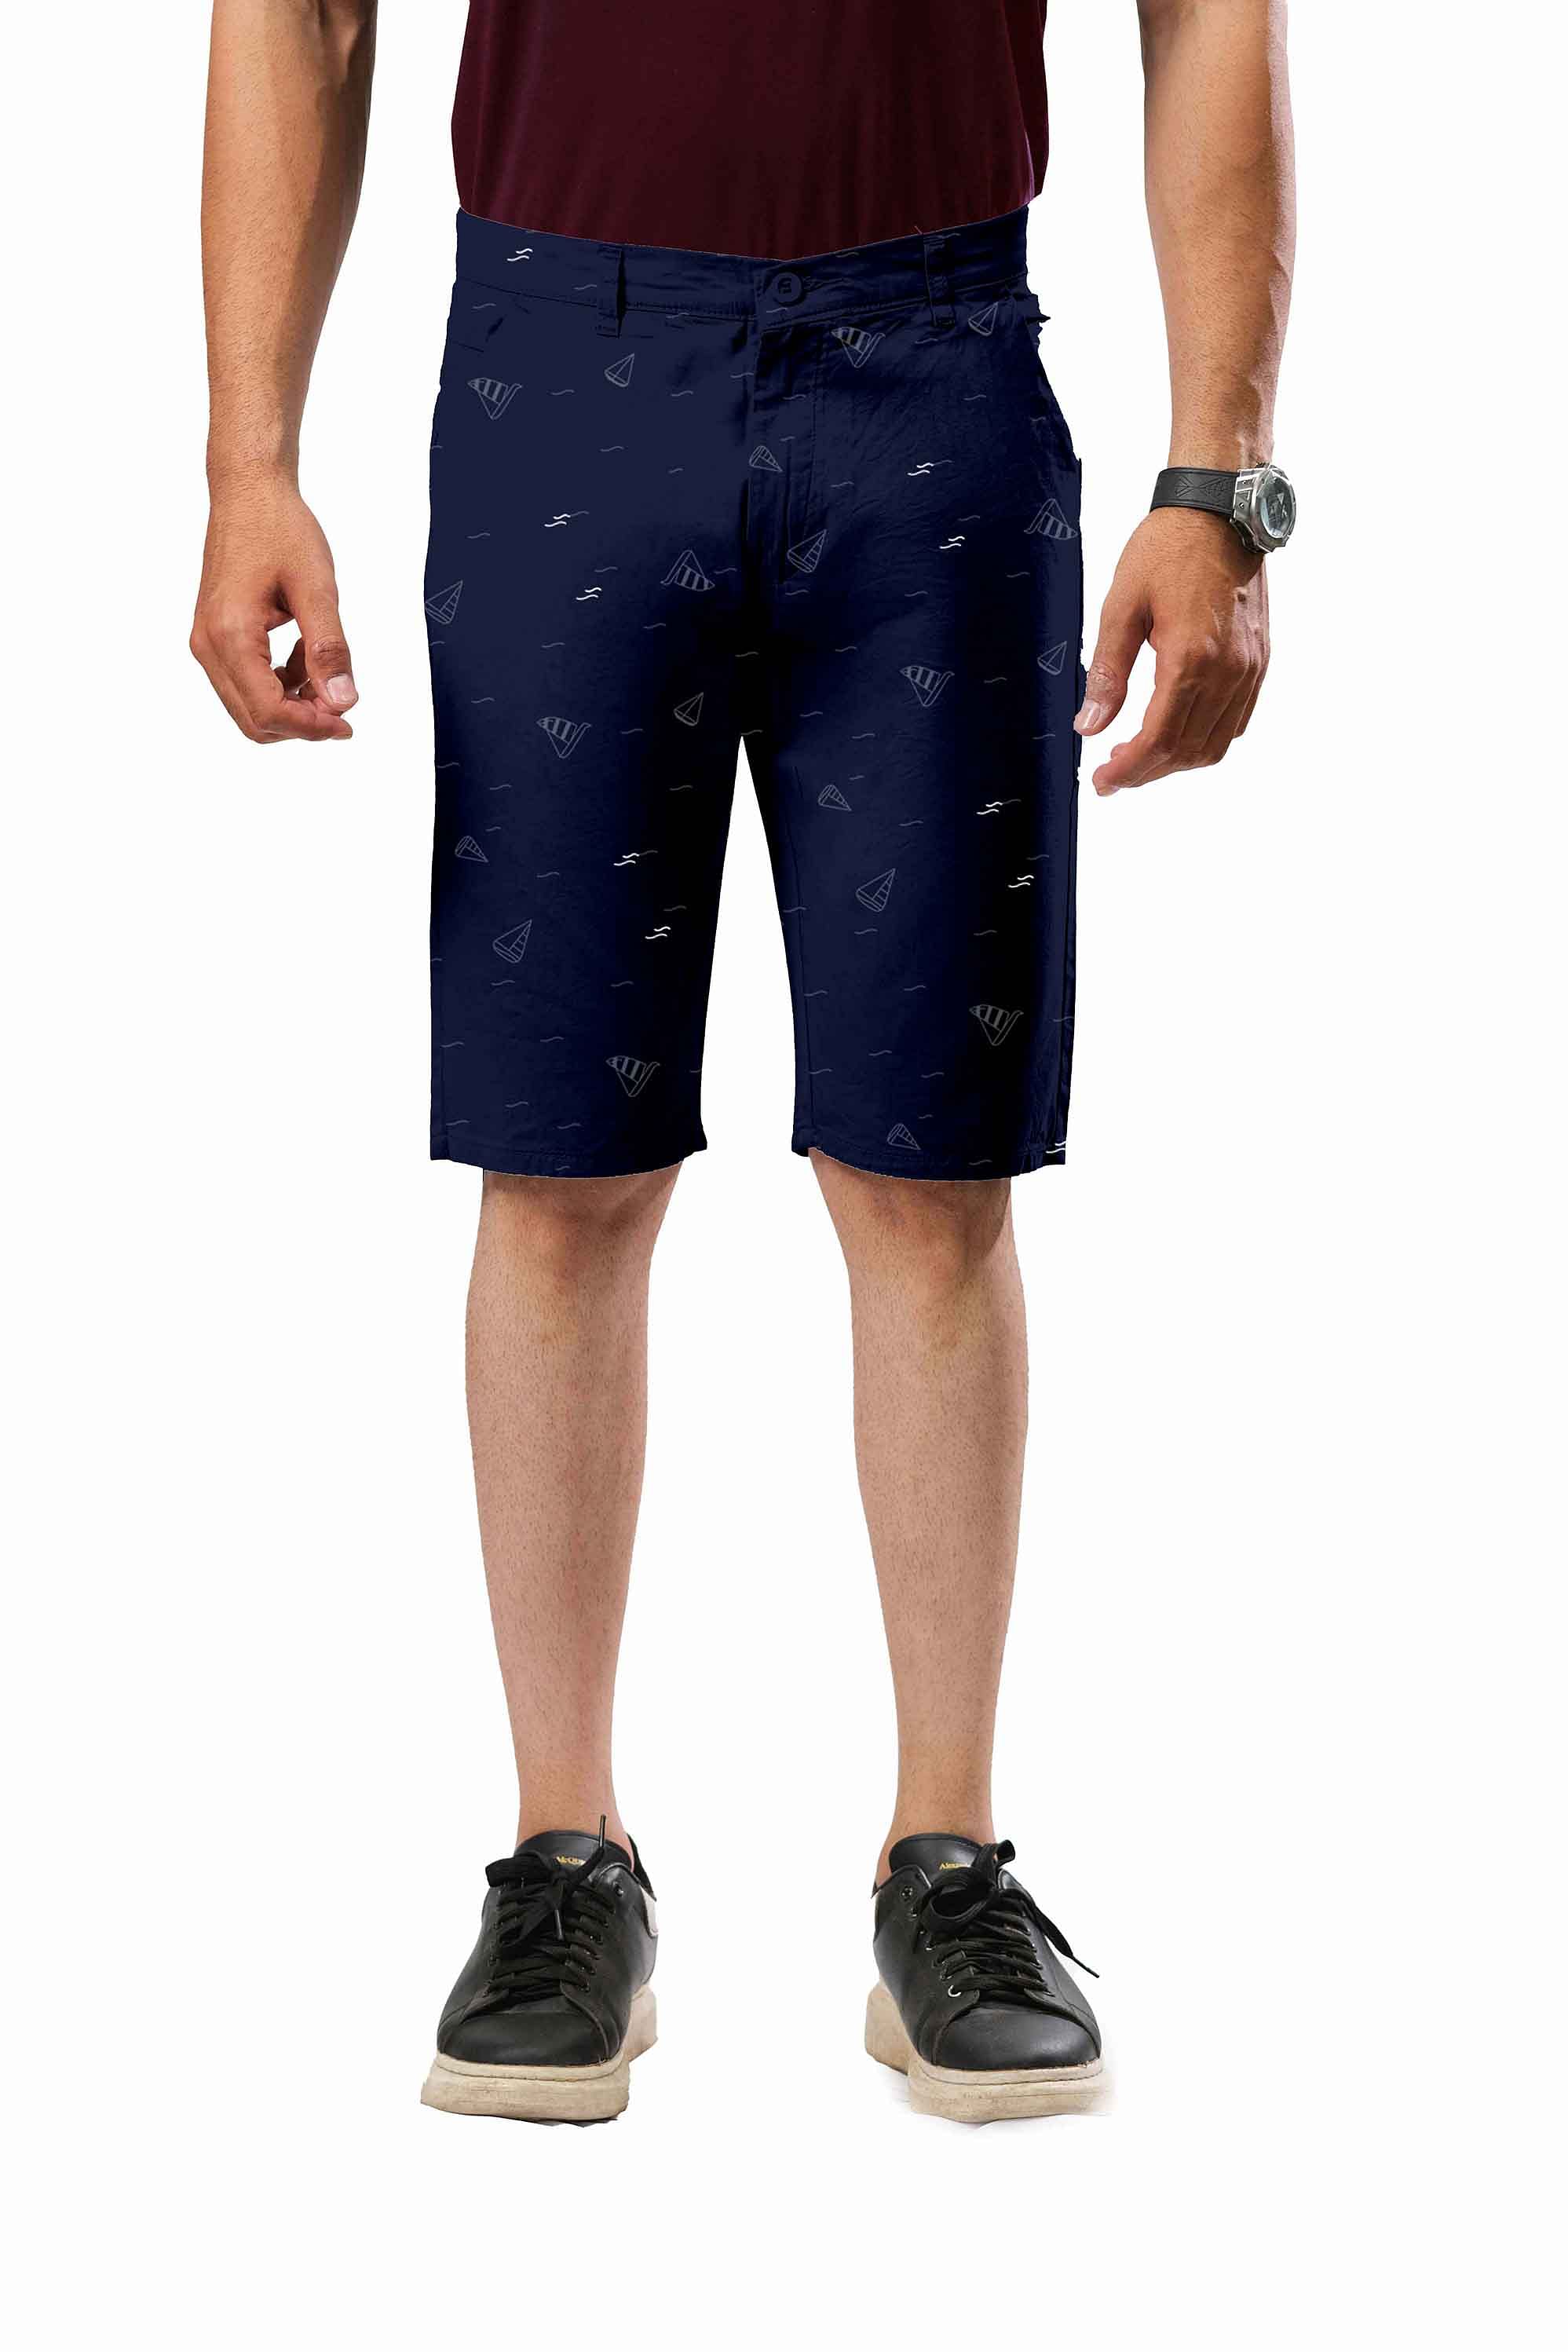 Shorts-CS-SH0002, NAVY BLUE